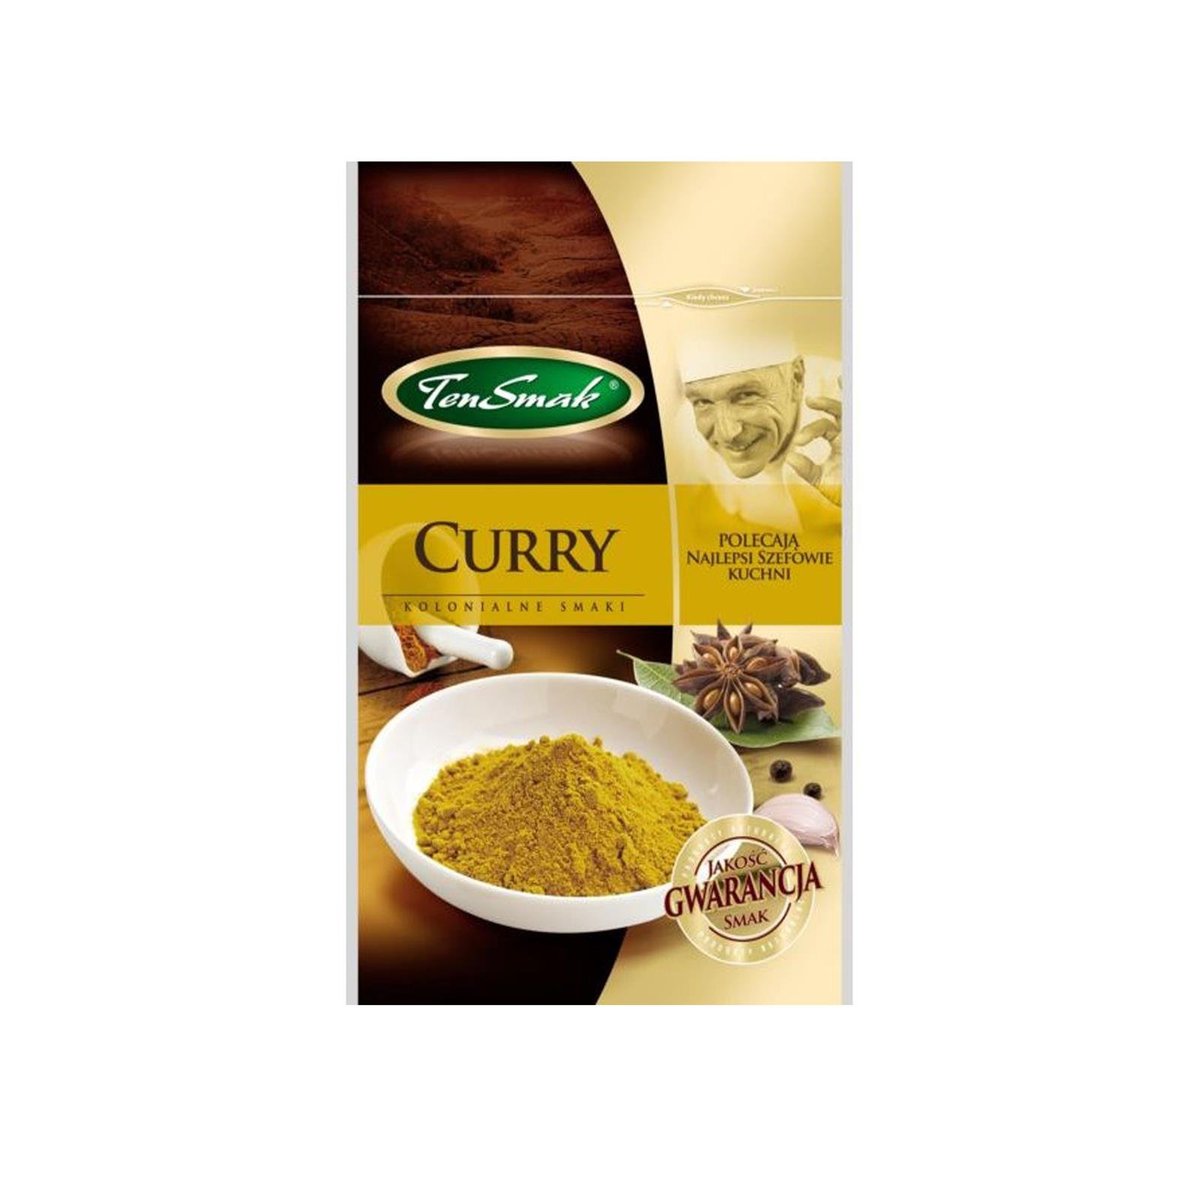 Ten Smak Curry 30 g